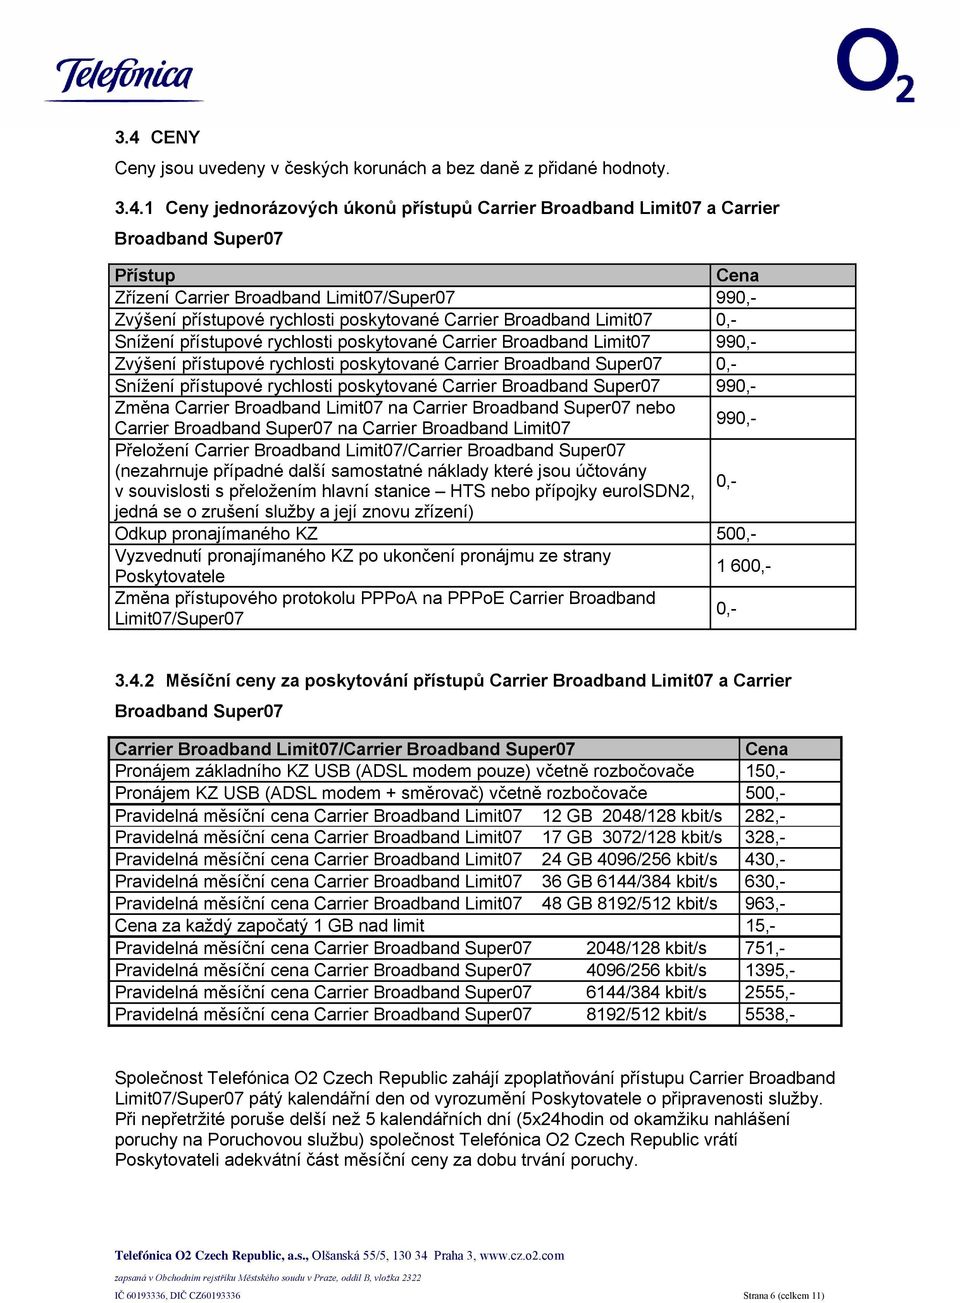 rychlosti poskytované Carrier Broadband Super07 0,- Snížení přístupové rychlosti poskytované Carrier Broadband Super07 990,- Změna Carrier Broadband Limit07 na Carrier Broadband Super07 nebo Carrier